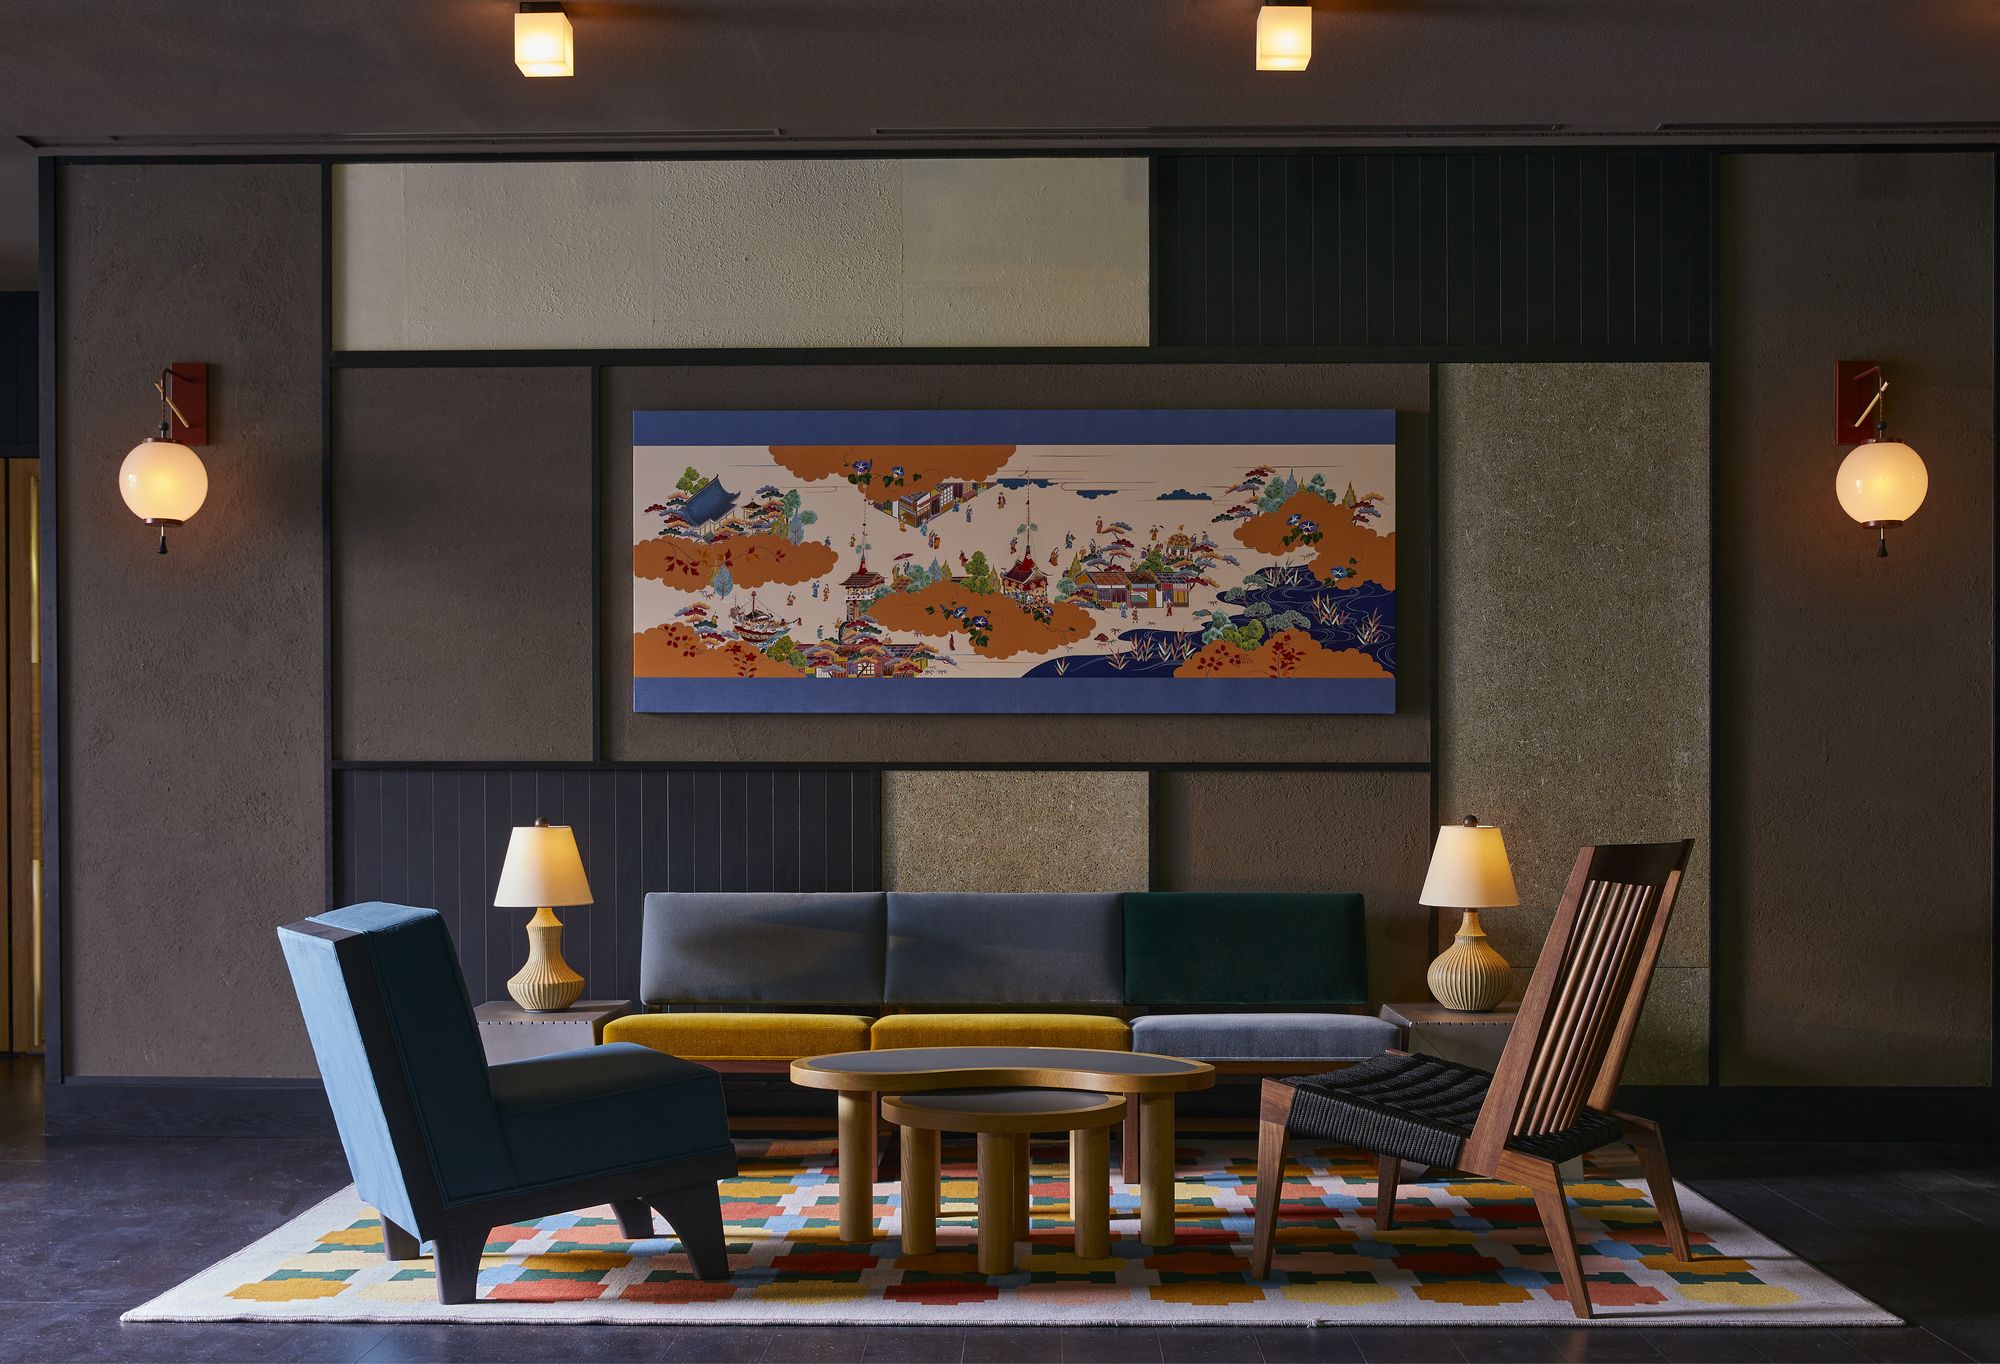 图片[2]|Ace酒店京都|ART-Arrakis | 建筑室内设计的创新与灵感